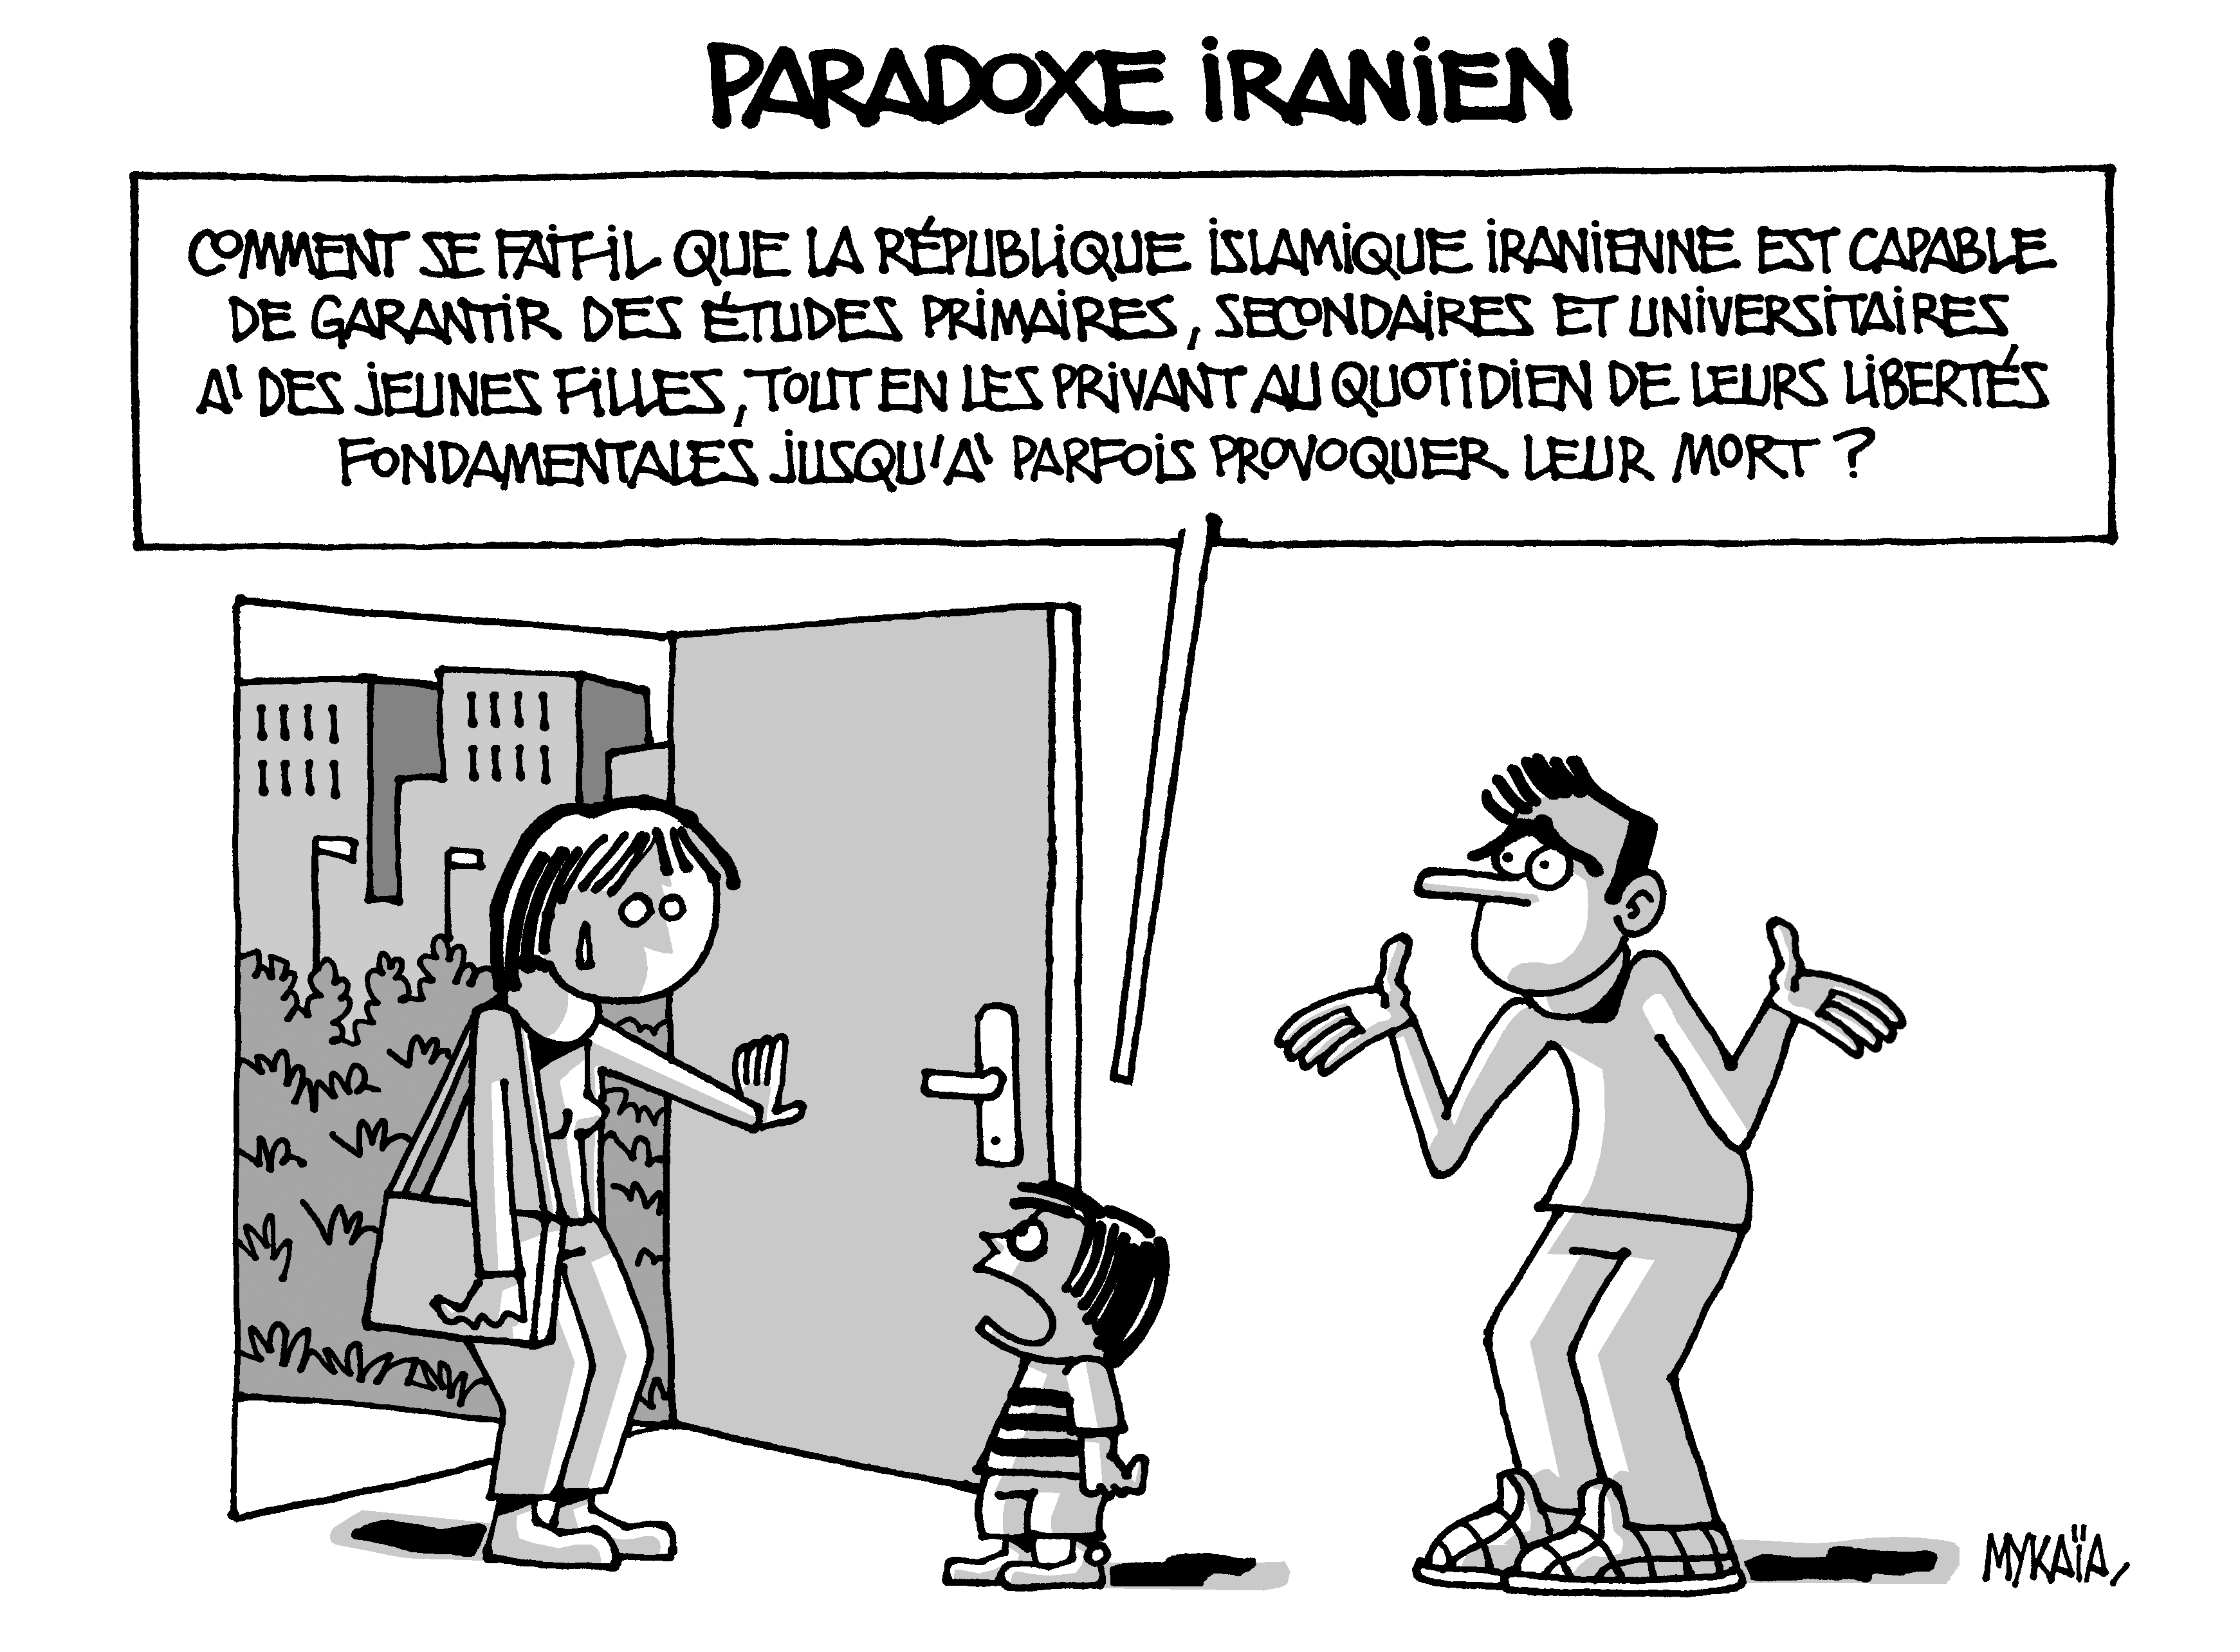 Paradoxe iranien